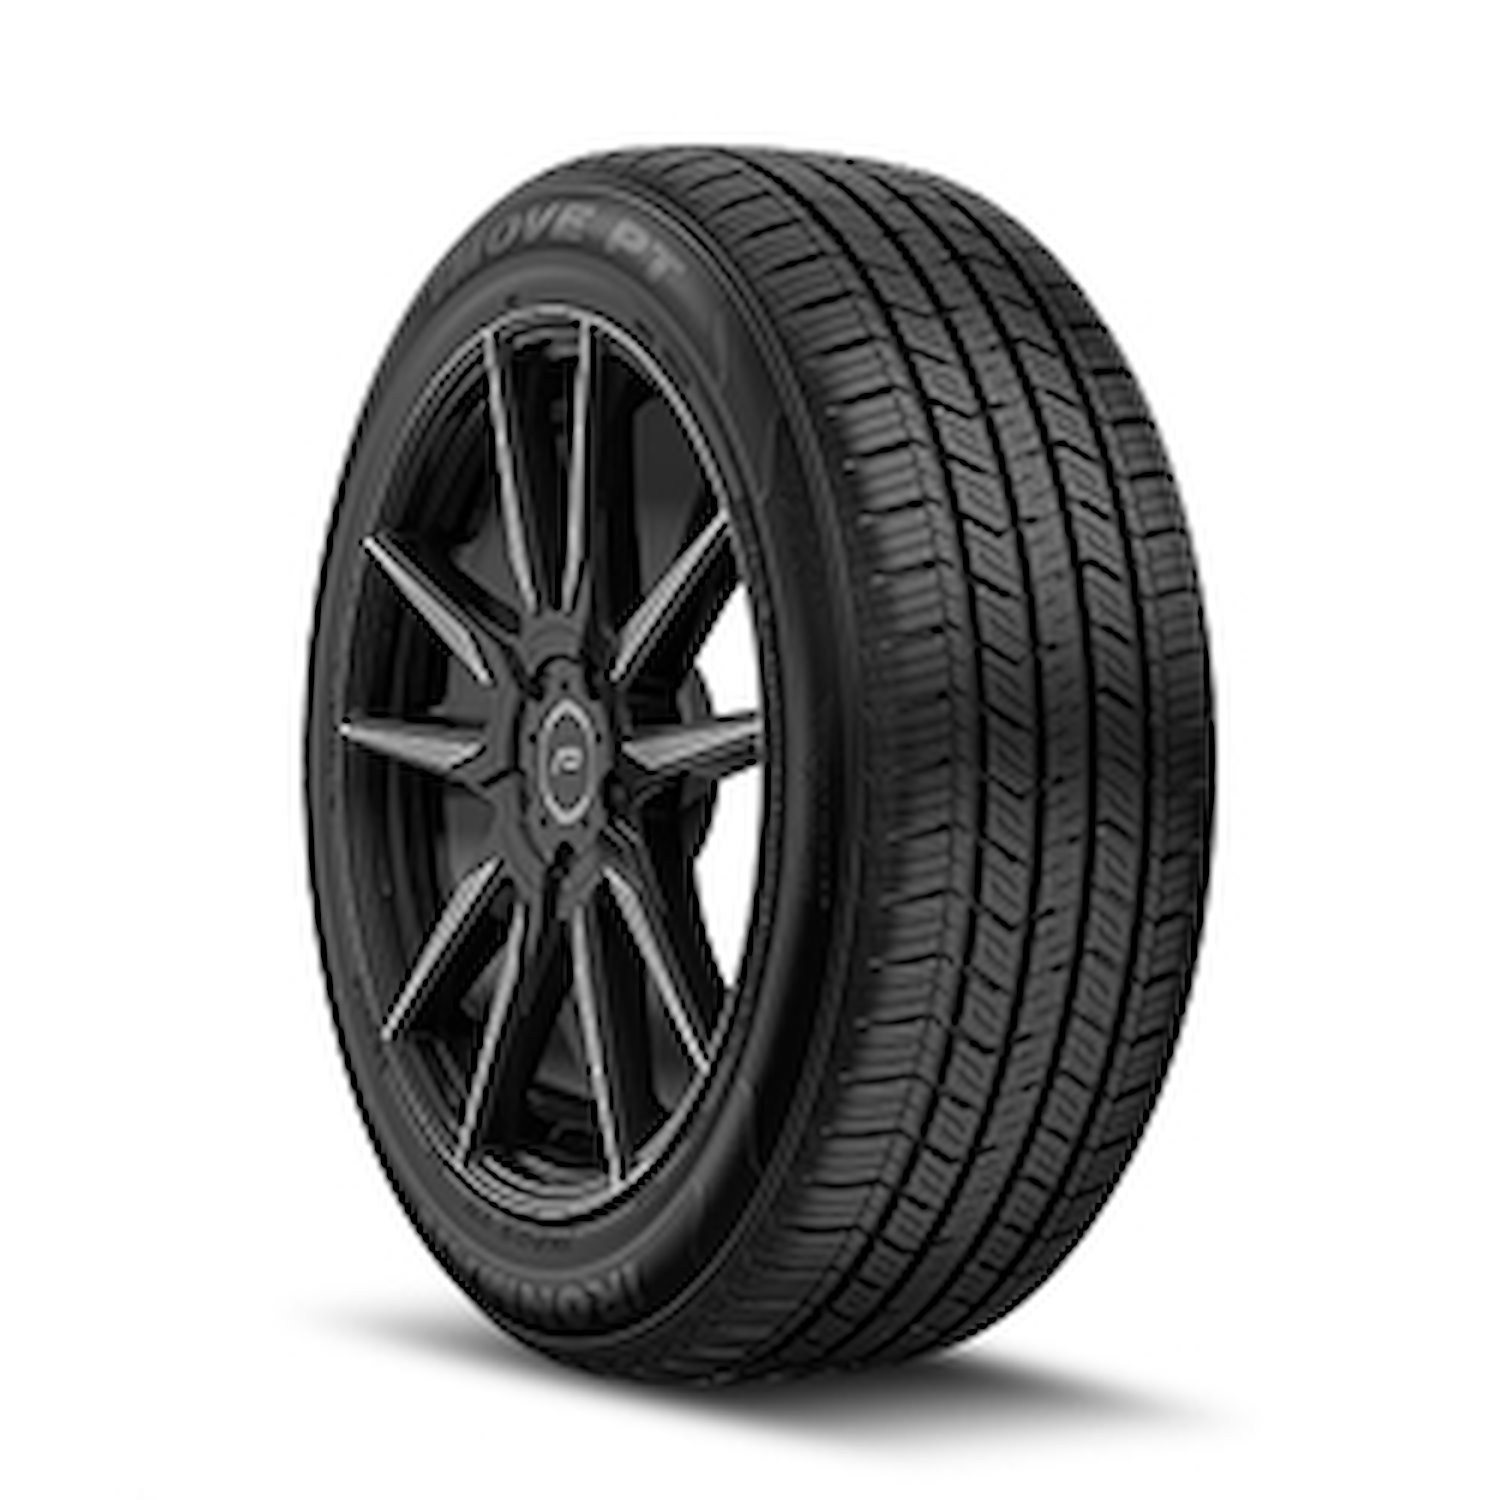 98458 iMOVE PT Tire, 195/60R15, 88H